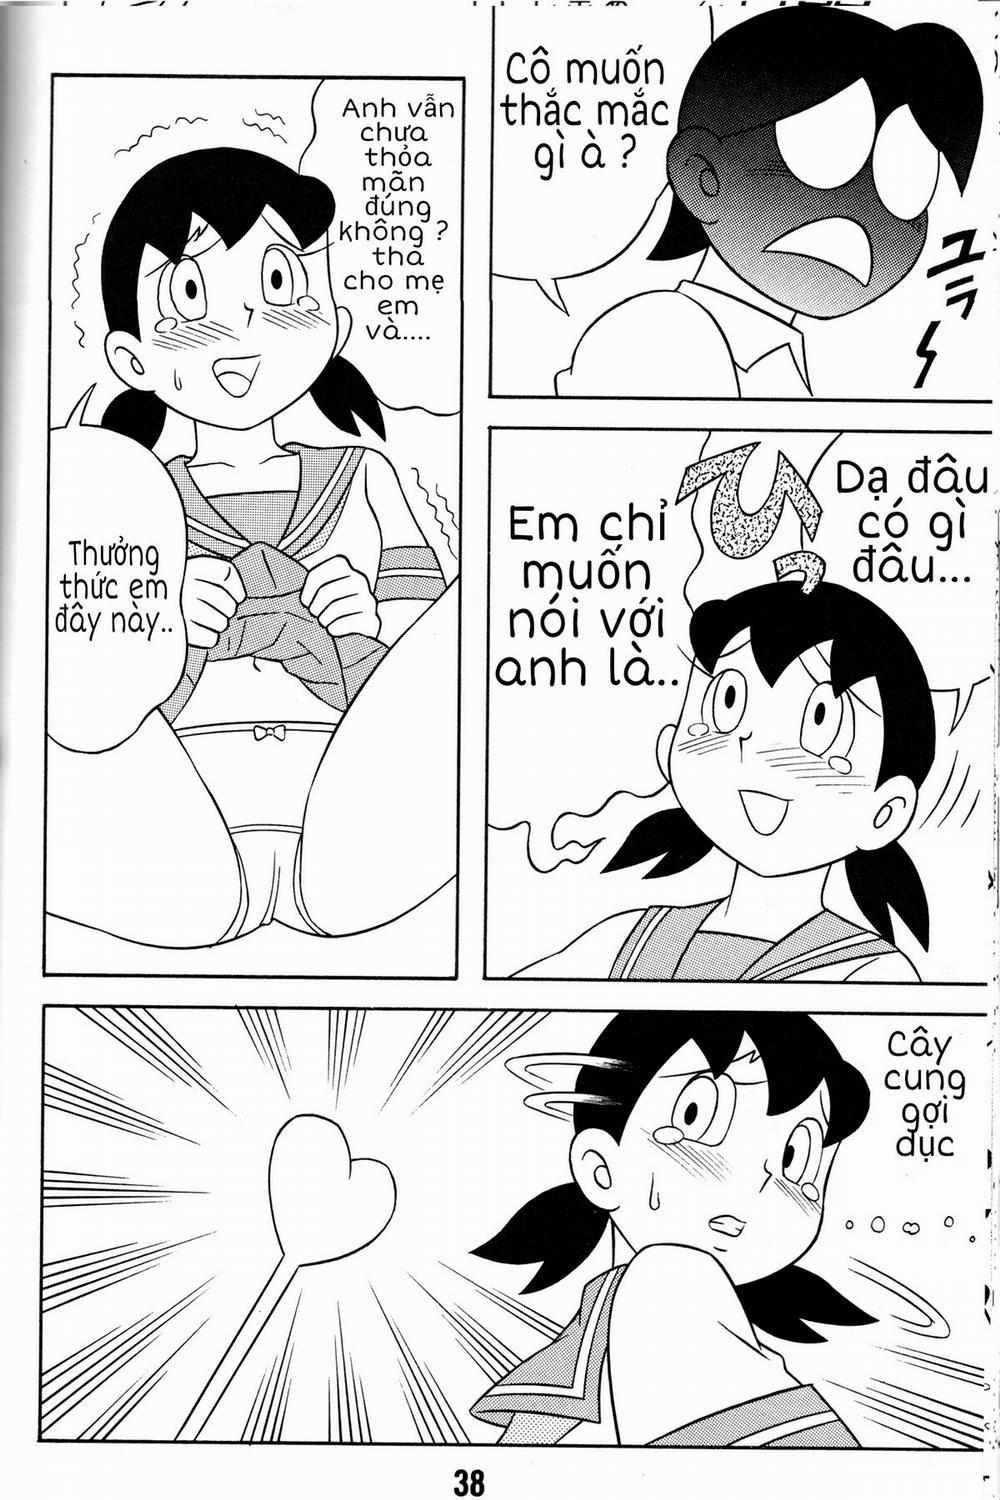 Tuyển Tập Doraemon Doujinshi 18+ Chương 2 T ng lai k di u Trang 4